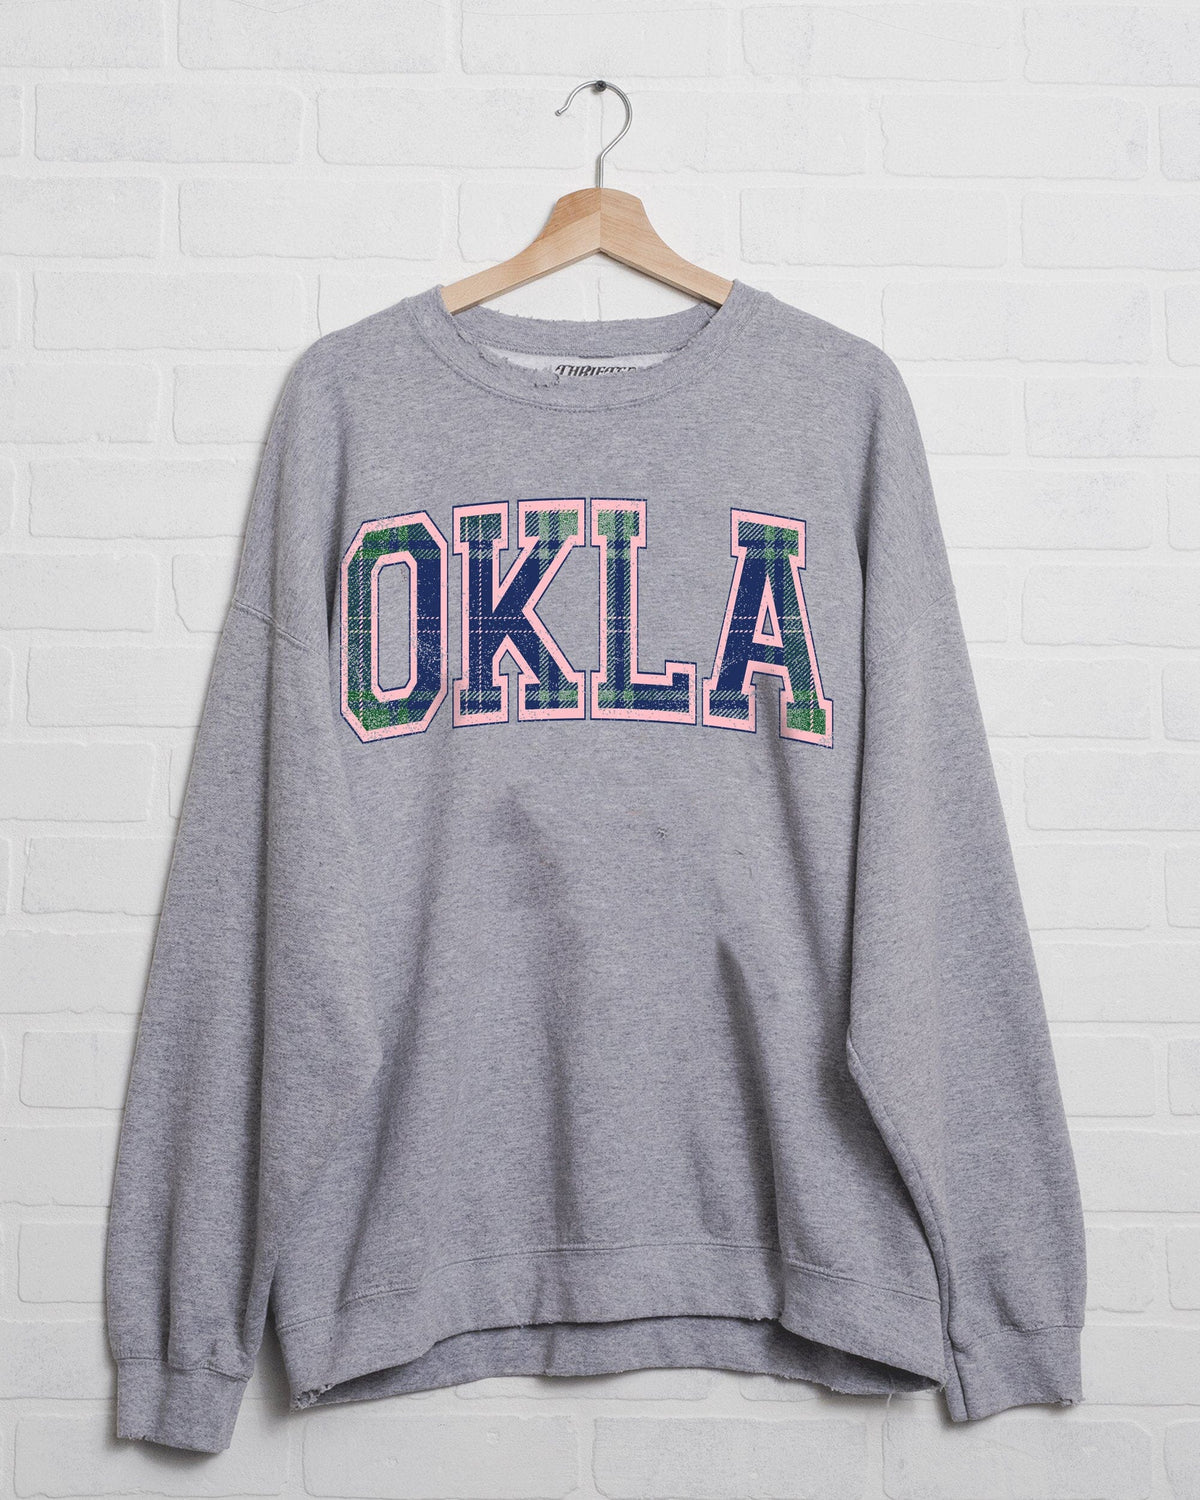 OKLA Plaid Arch (Pink Outline) Gray Thrifted Sweatshirt - shoplivylu